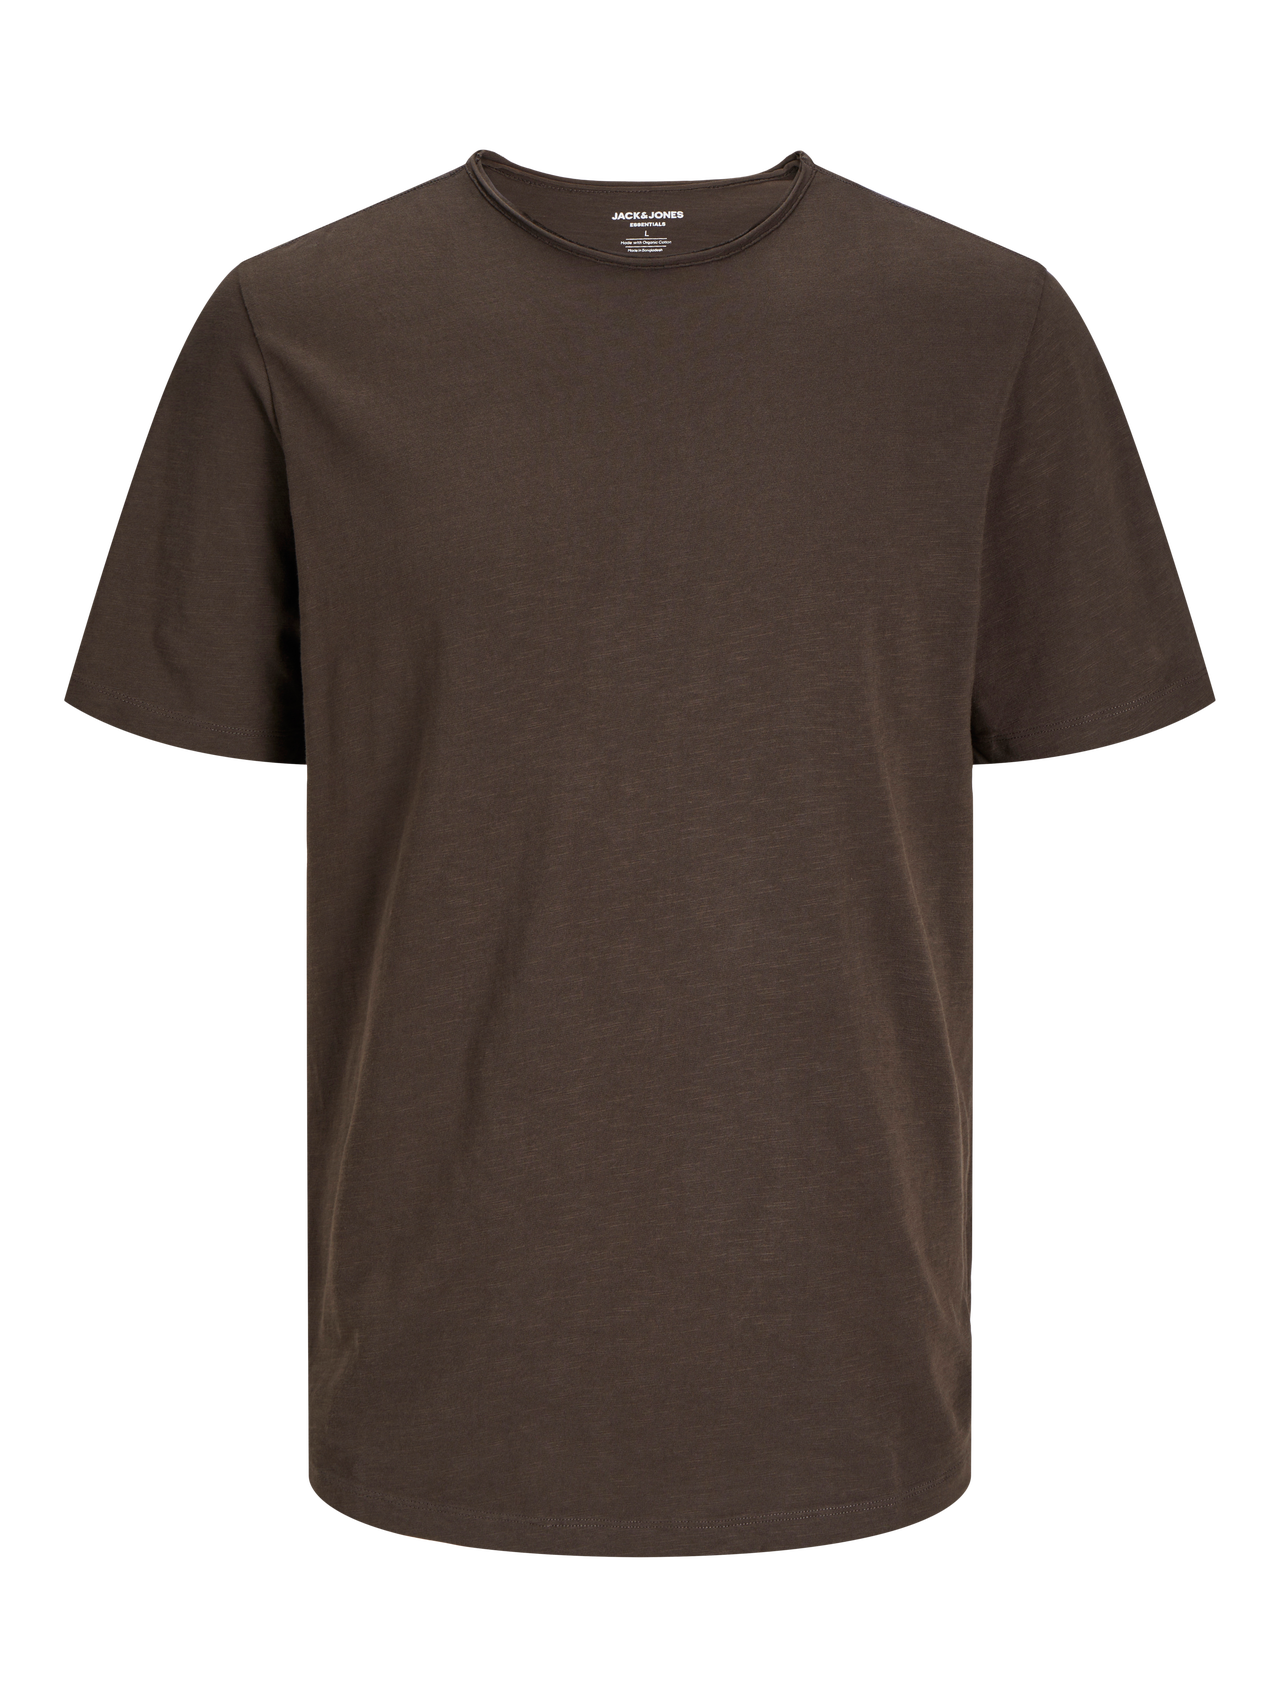 Jack & Jones Yksivärinen Pyöreä pääntie T-paita -Mulch - 12182498